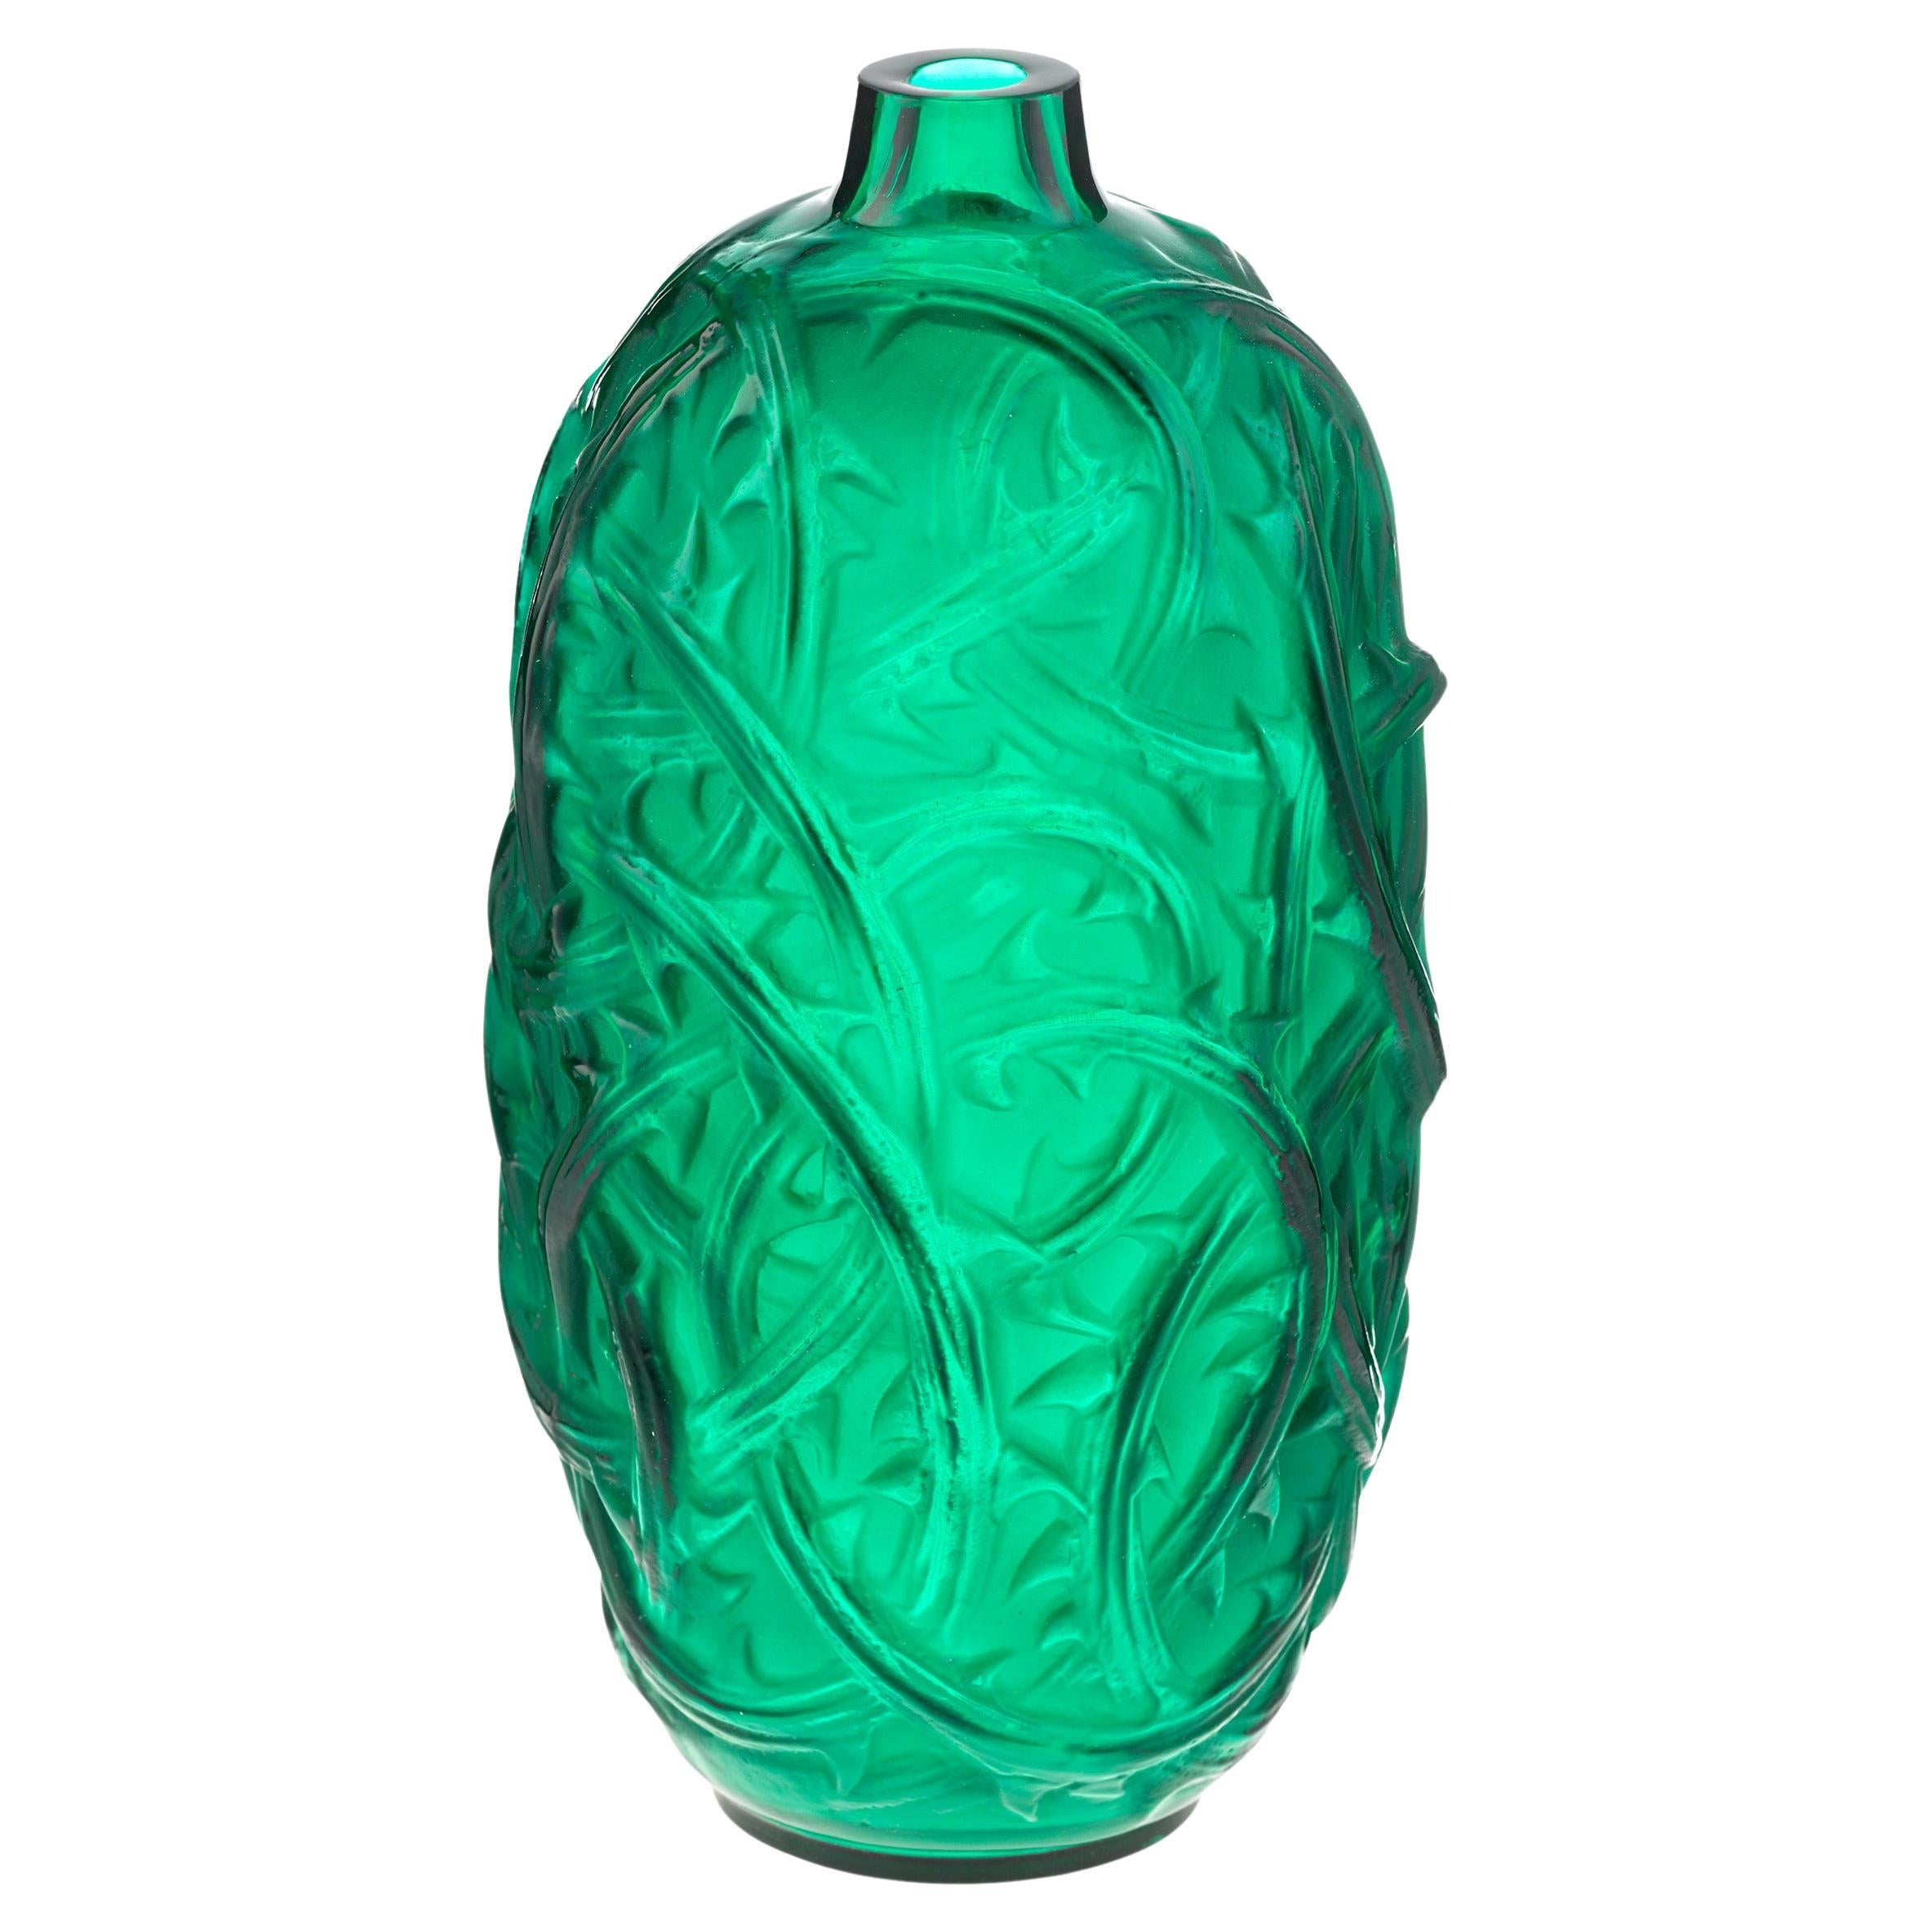 Green Ronces Vase By René Lalique